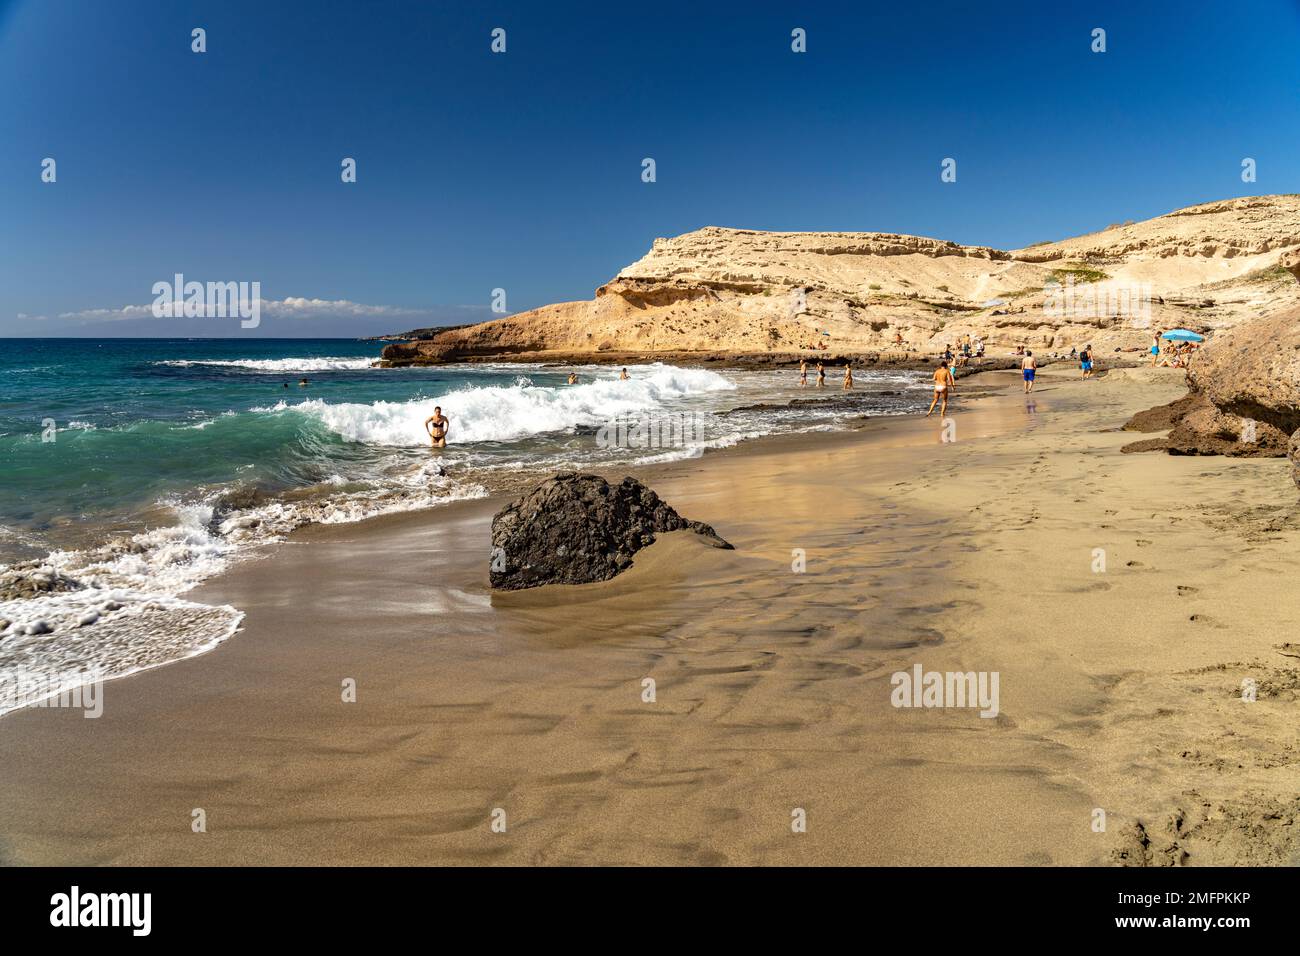 Der Strand Playa de Diego Hernandez an der Costa Adeje, Teneriffa, Kanarische Inseln, Spanien |  The Costa Adeje beach Playa de Diego Hernandez, Tener Stock Photo